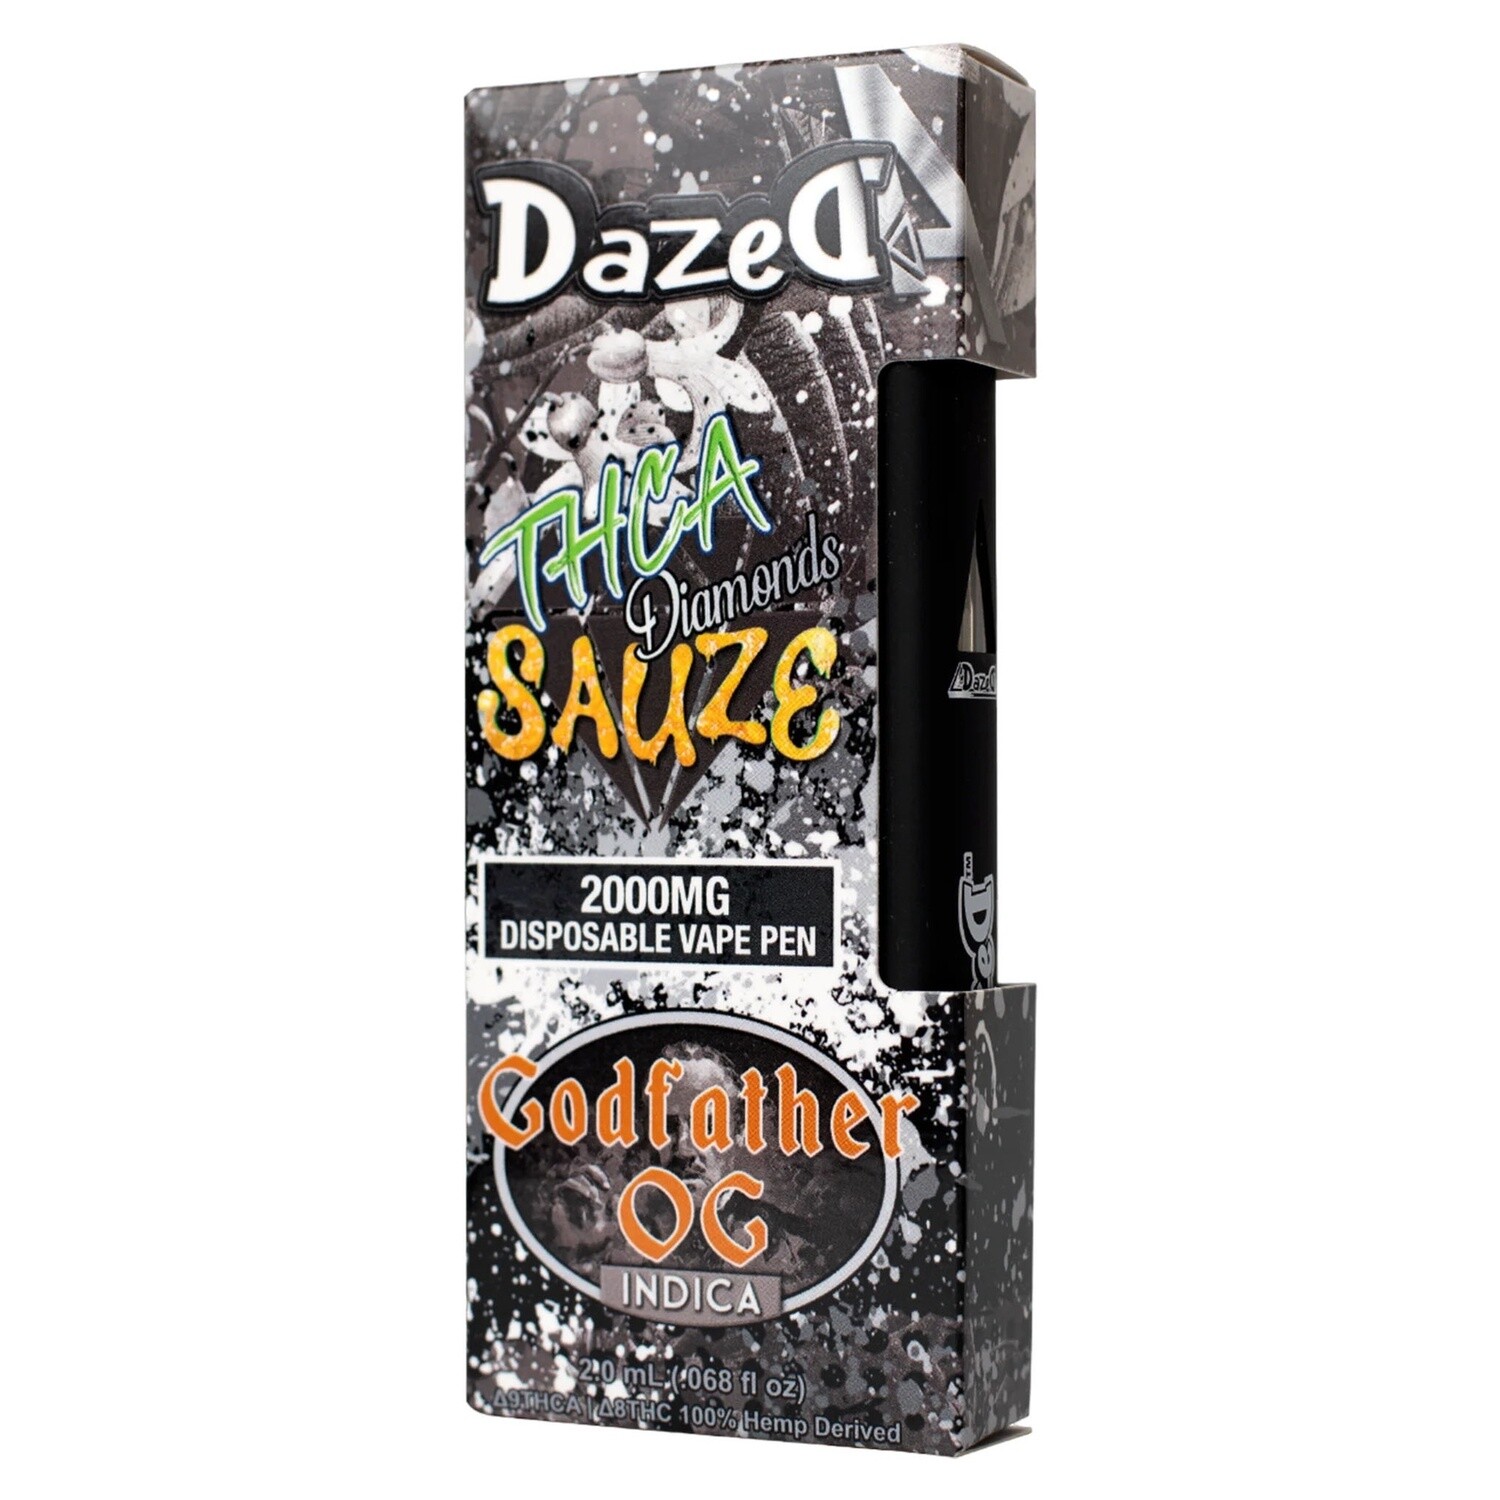 Dazed8, 2G THC-A - Godfather OG, Indica